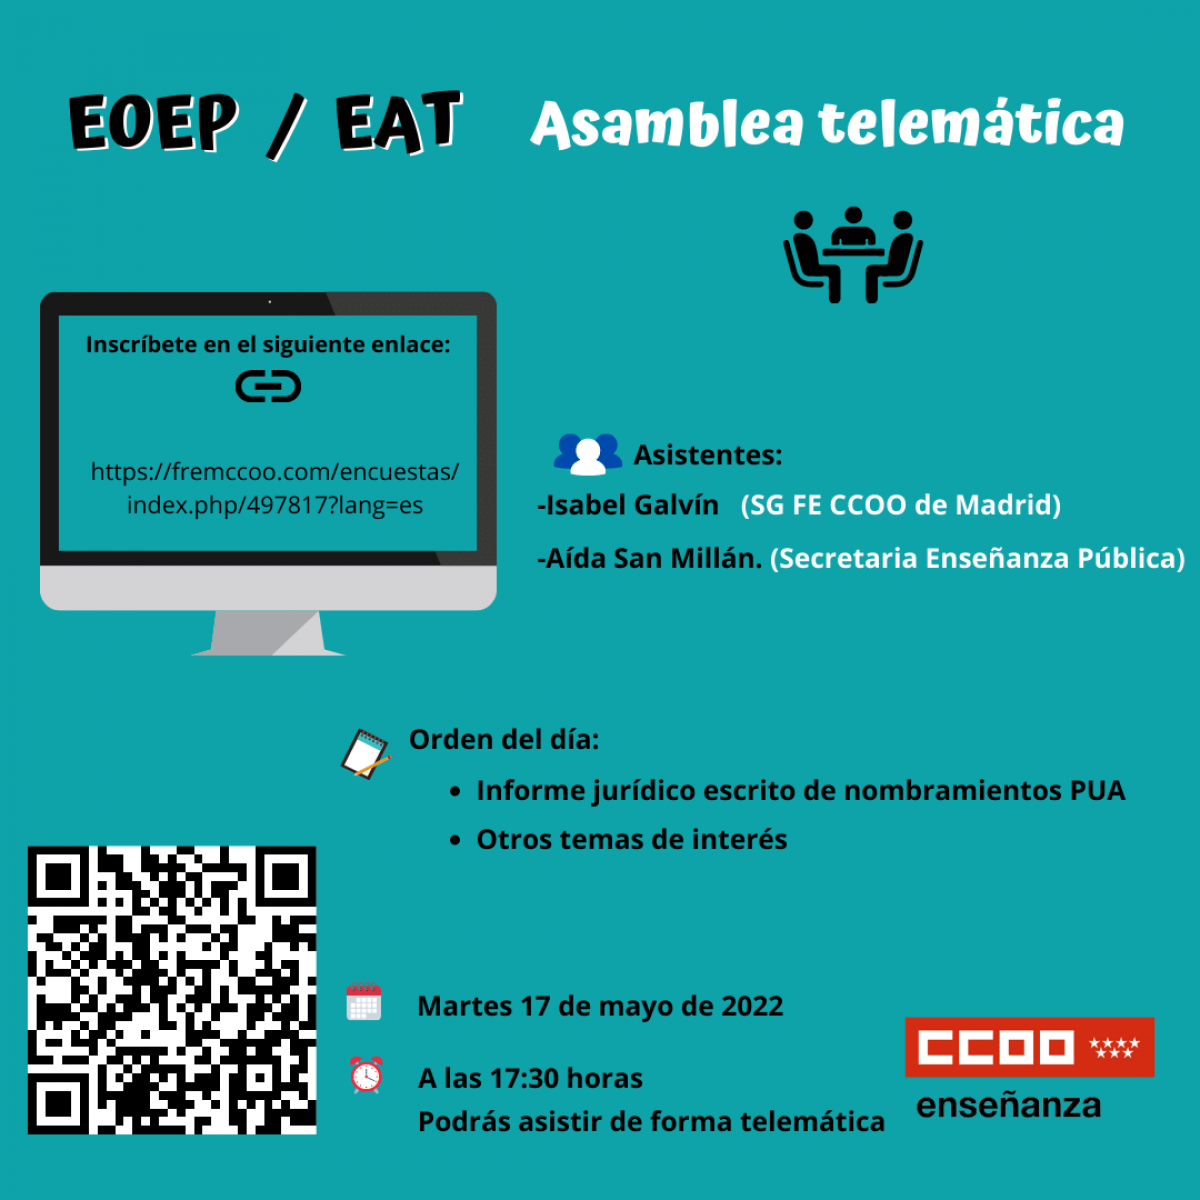 Asamblea EOEP / EAT